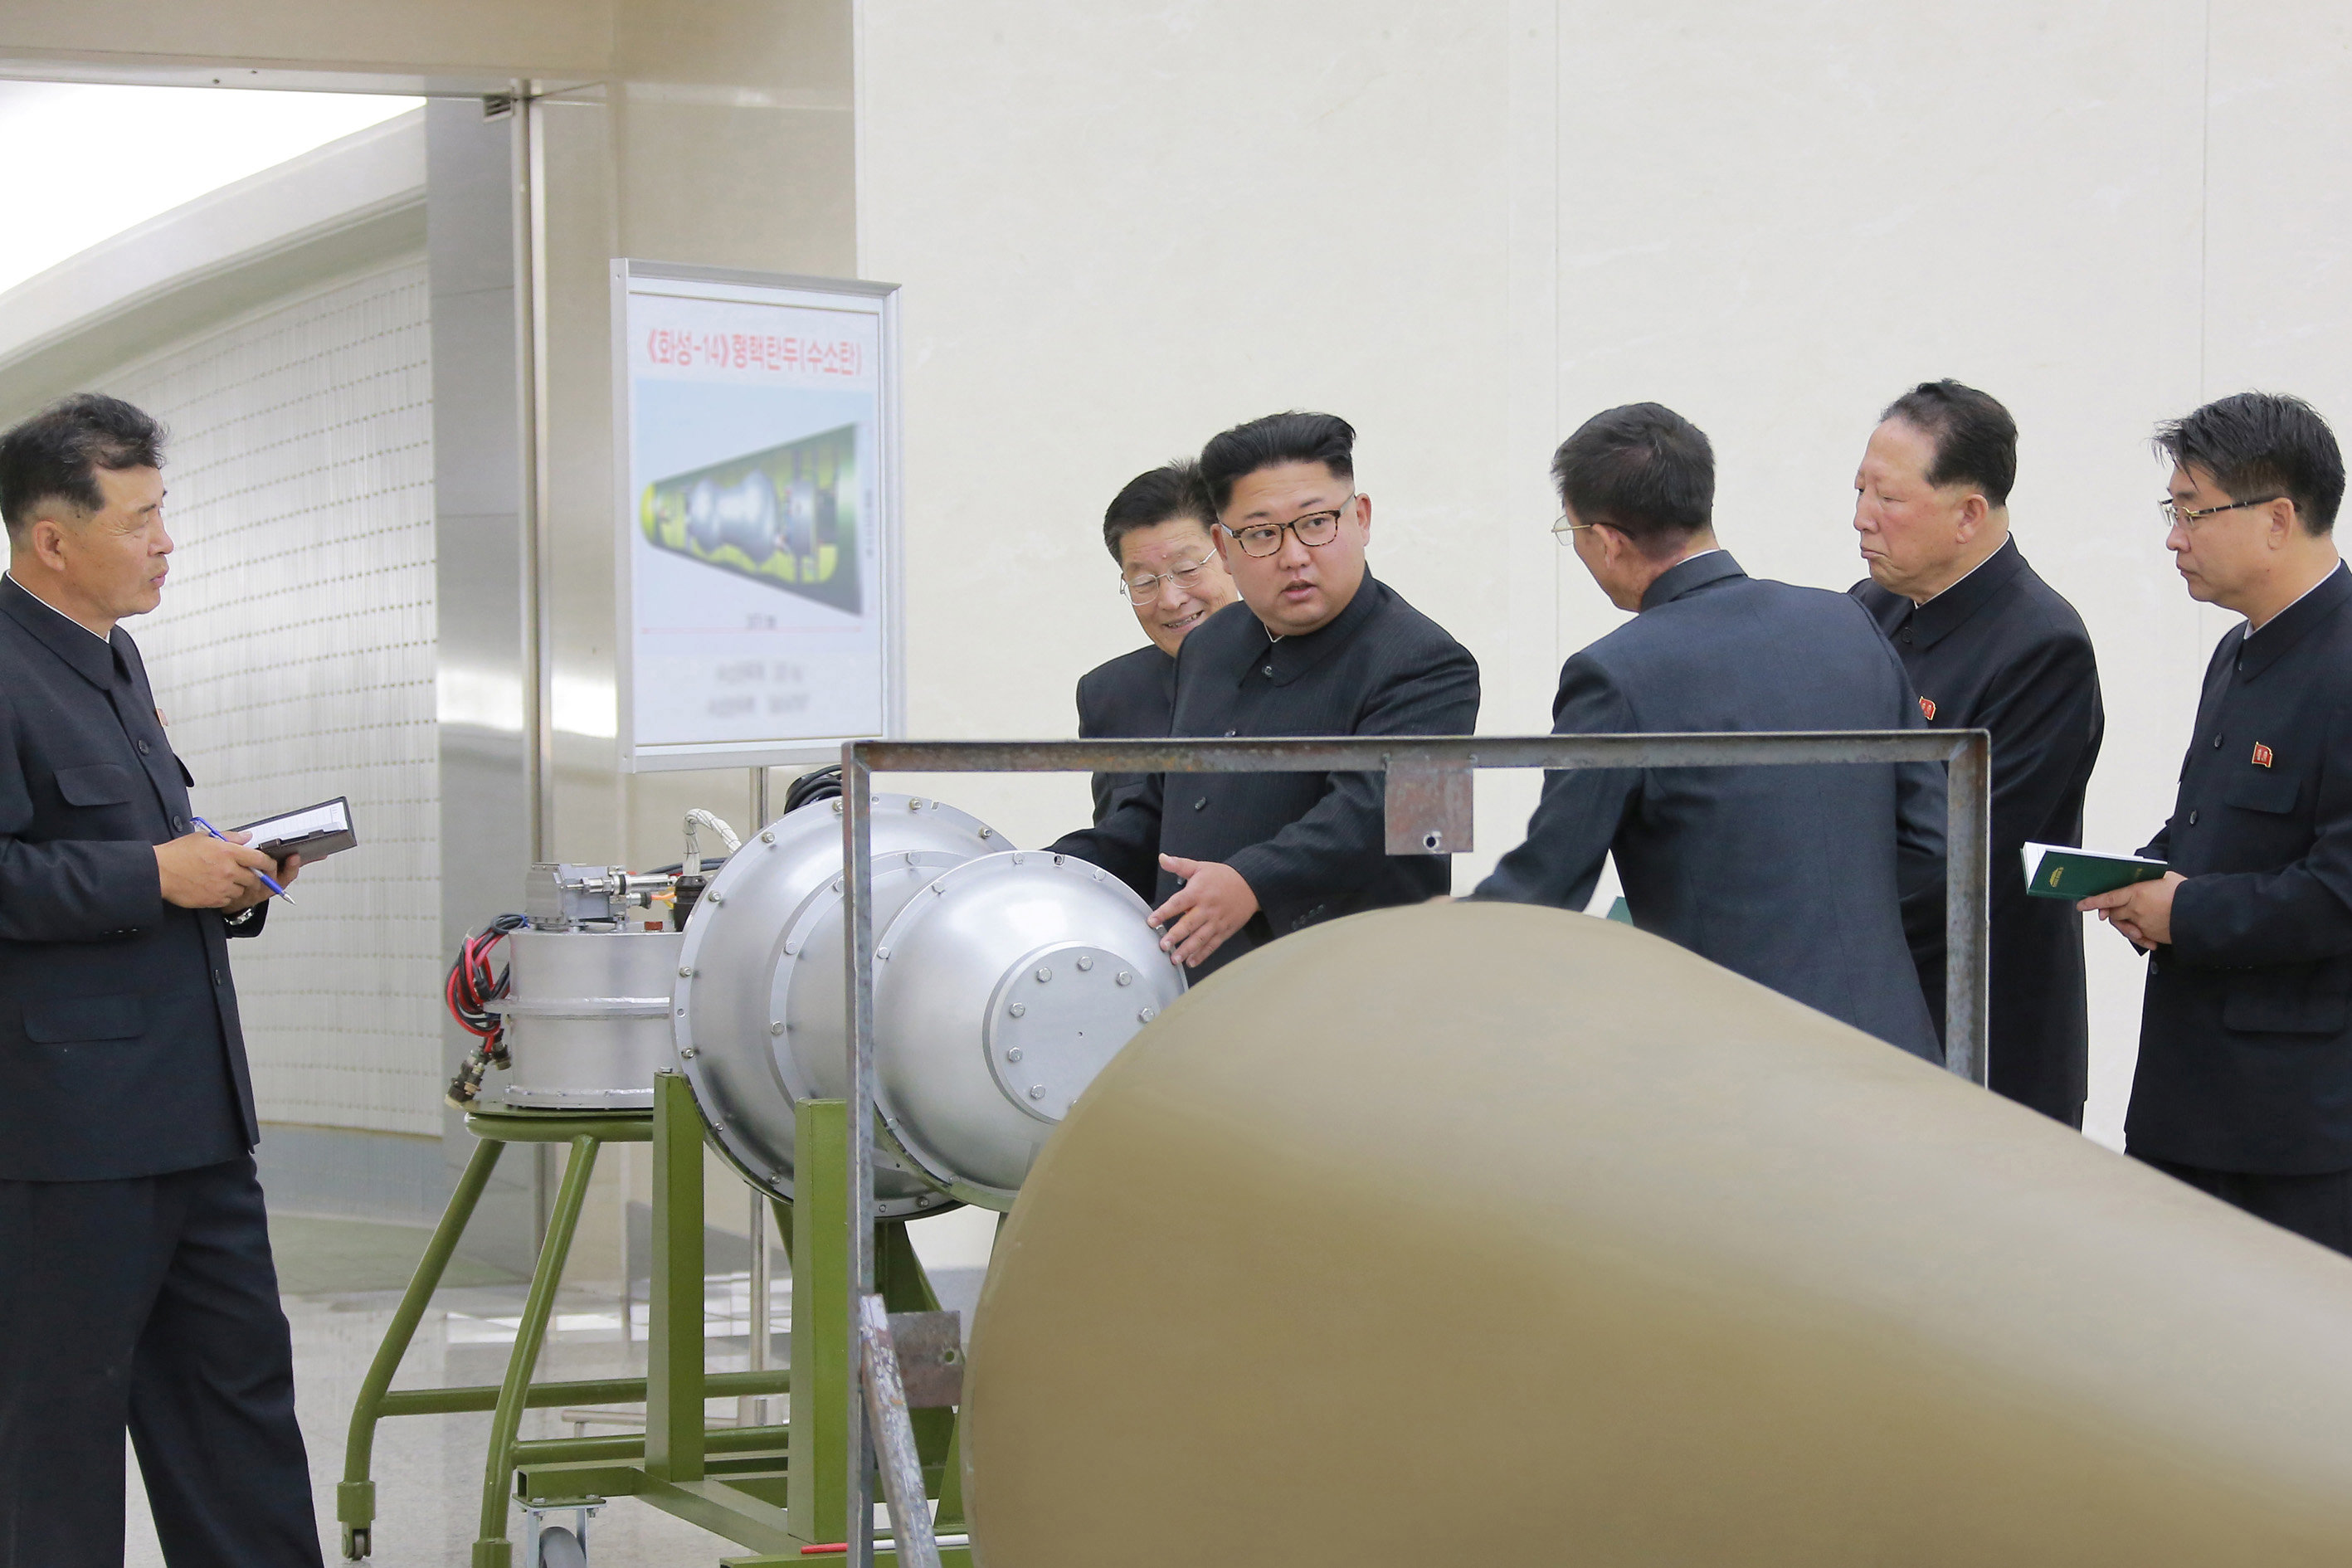 زعيم كوريا الشمالية يفحص  القنبلة الهيدروجينية قبل تجريبها